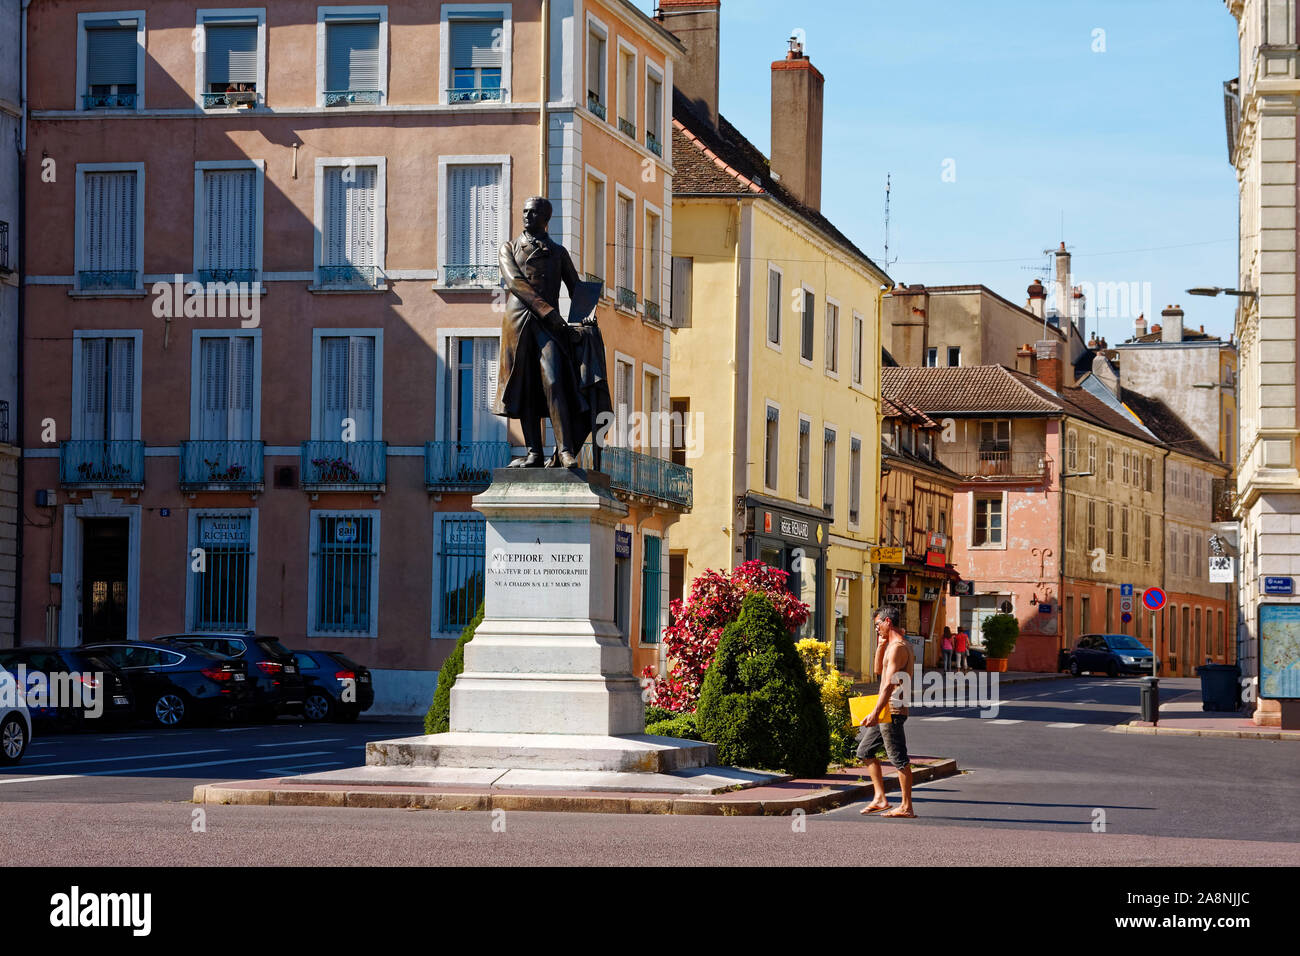 Stadtbild, alte Gebäude, Nicephore Niepce statue erfunden, 1887, Fotografie, Bildhauer Eugene Gillame, Public Art, sich kreuzenden Straßen, Menschen wandern, Stockfoto